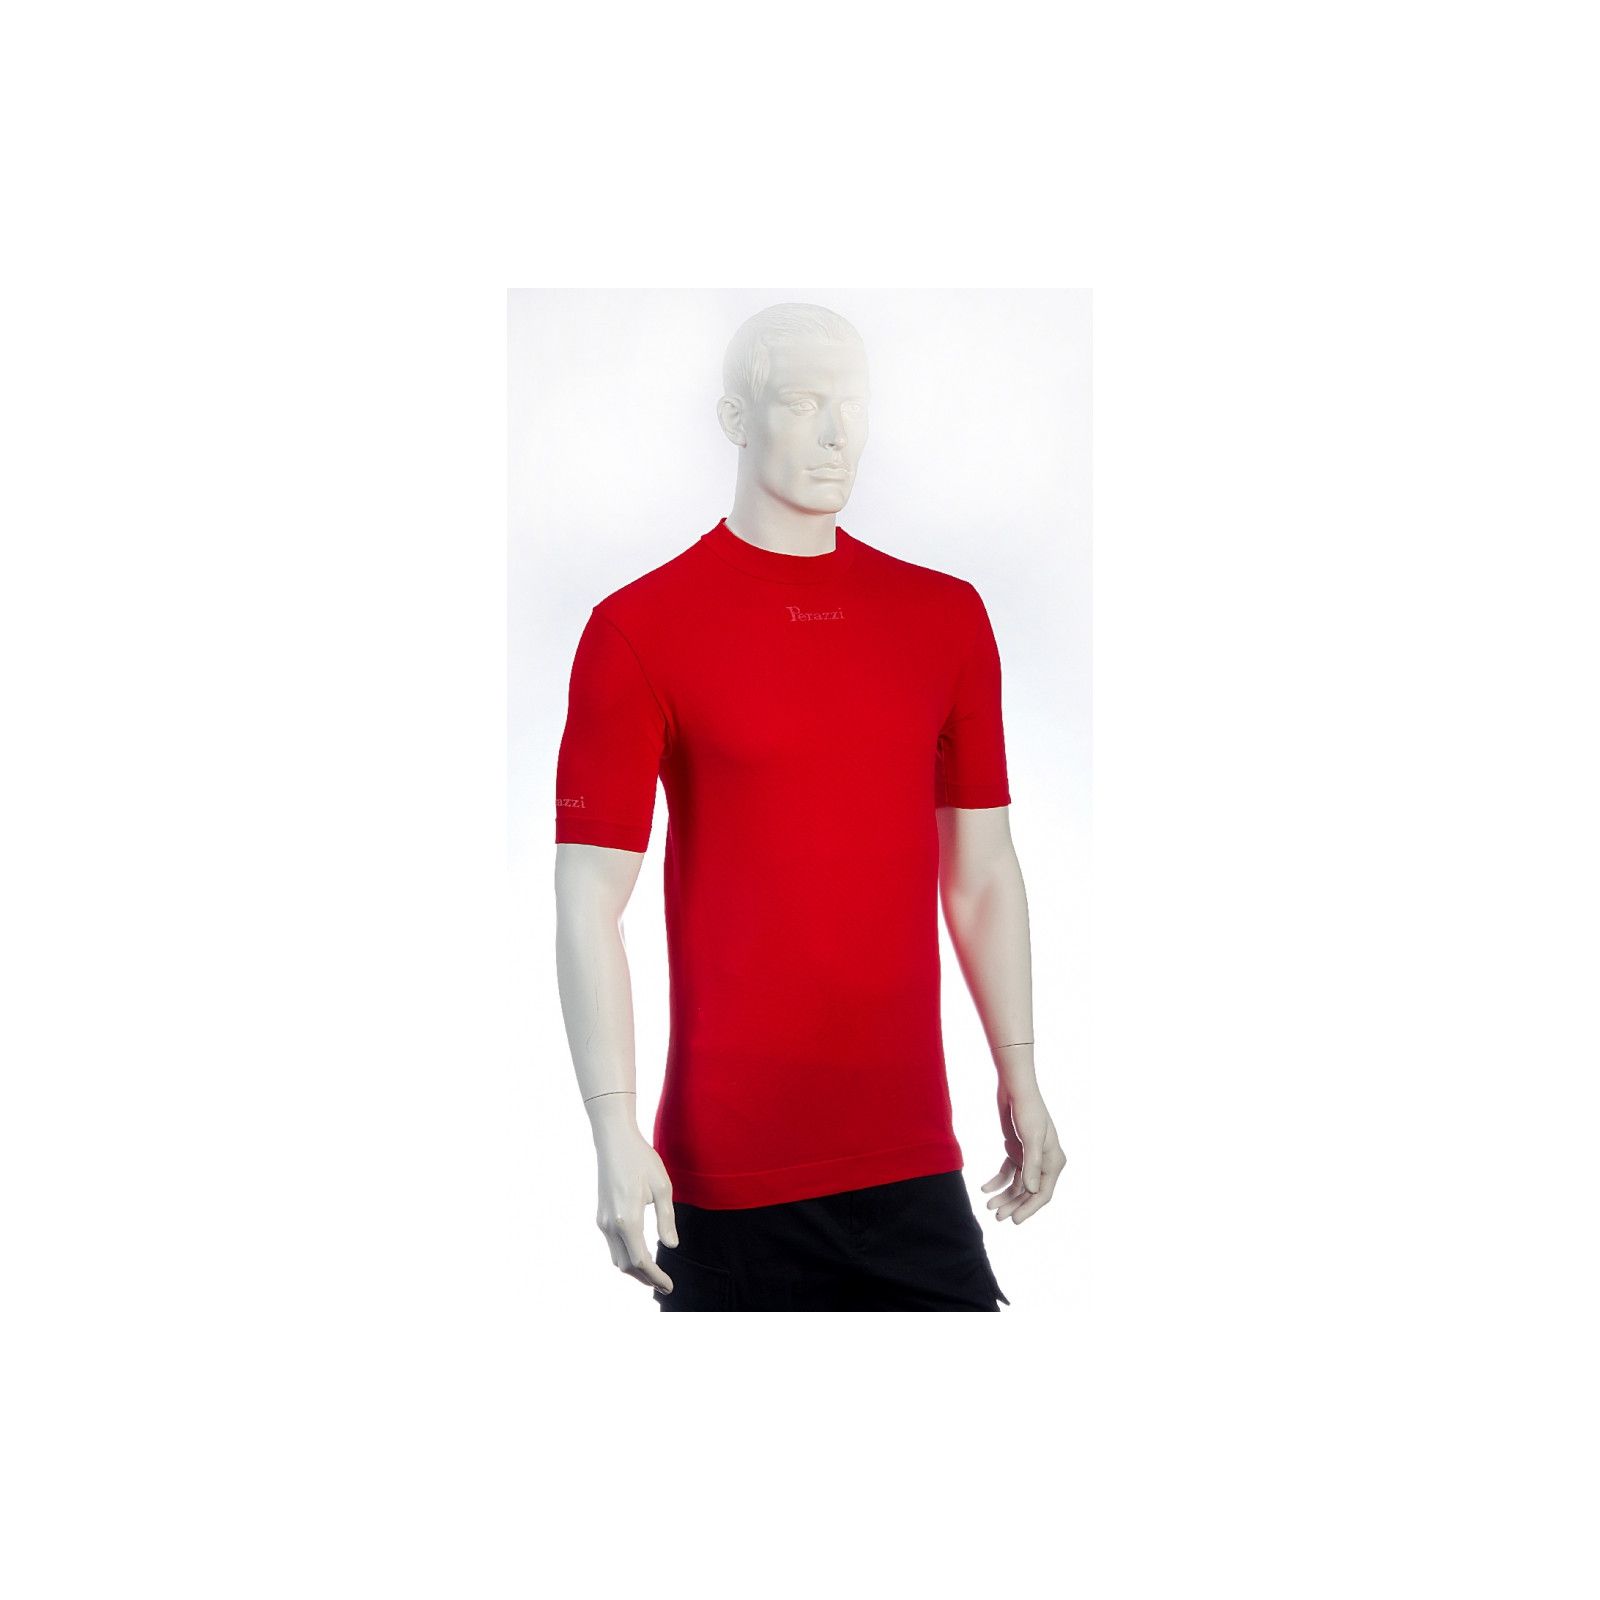 Camiseta tecnica termica Perazzi roja manga corta Perazzi